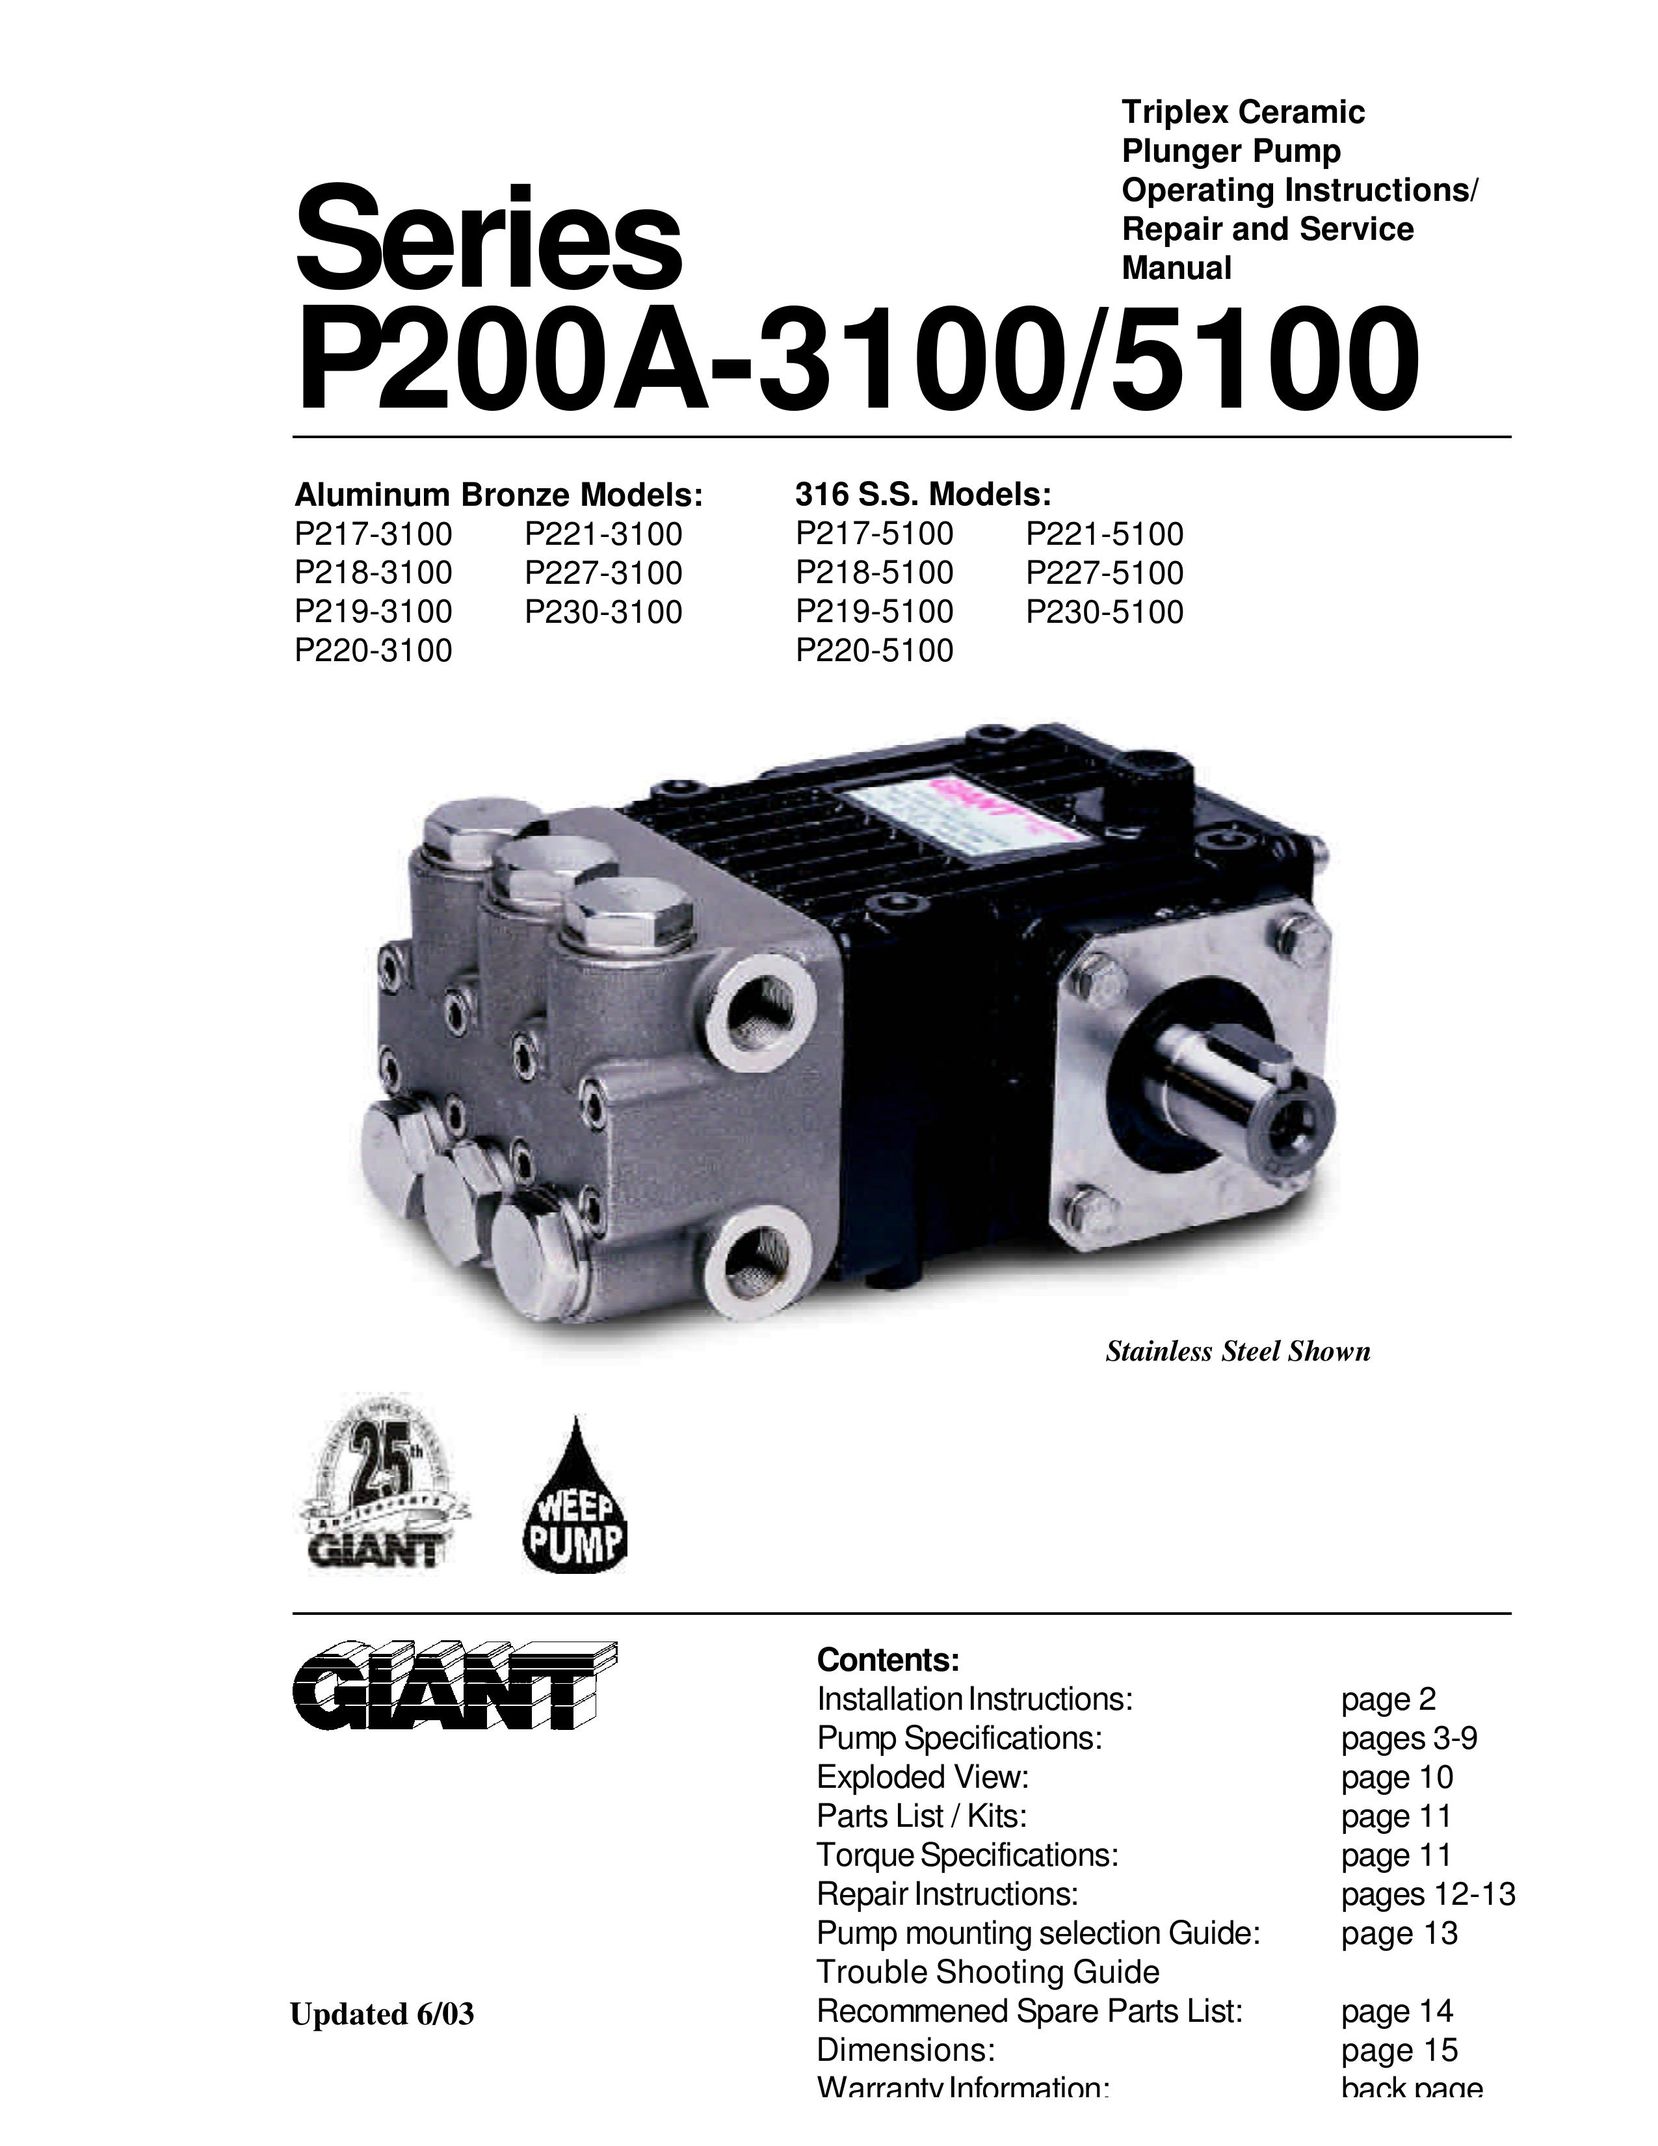 Giant P219-5100 Water Pump User Manual